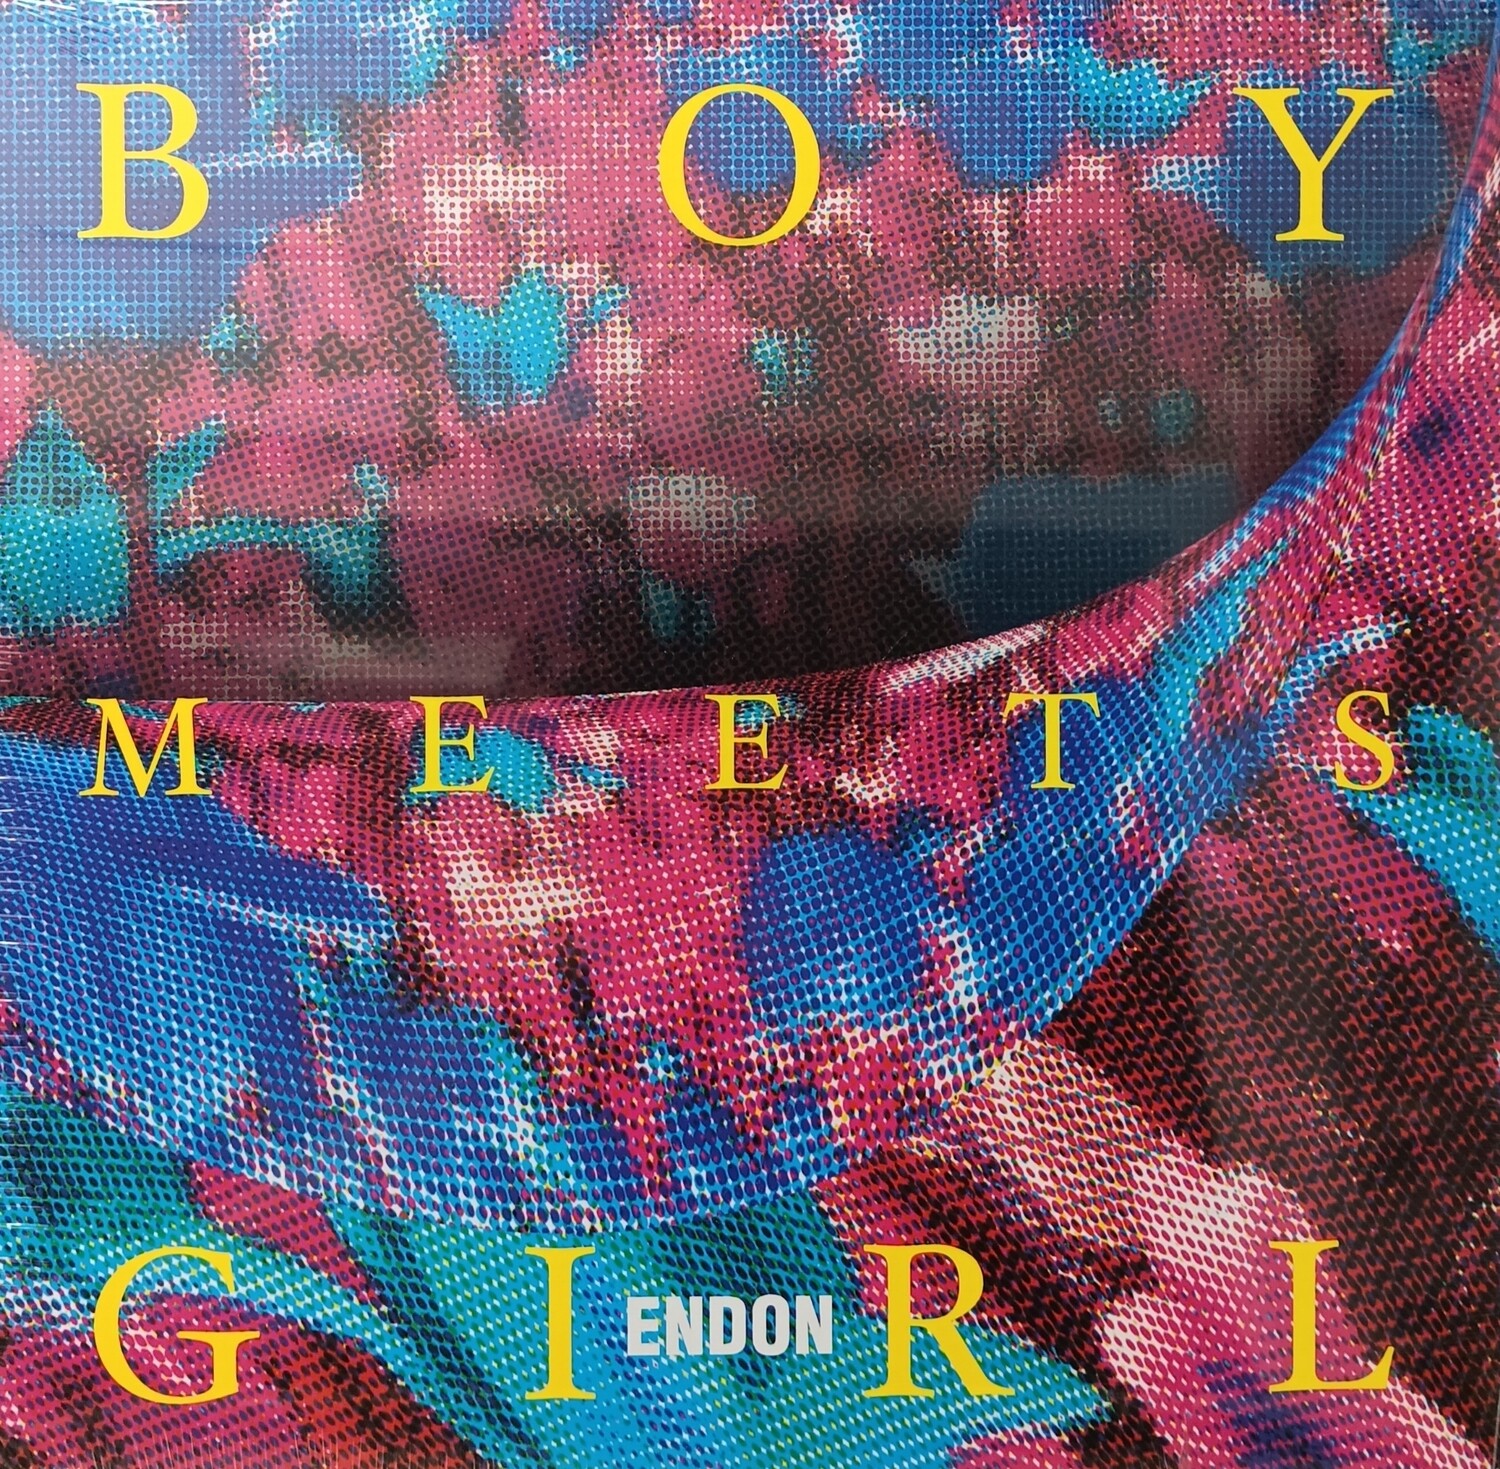 ENDON - Boy meets girl (NEUF)